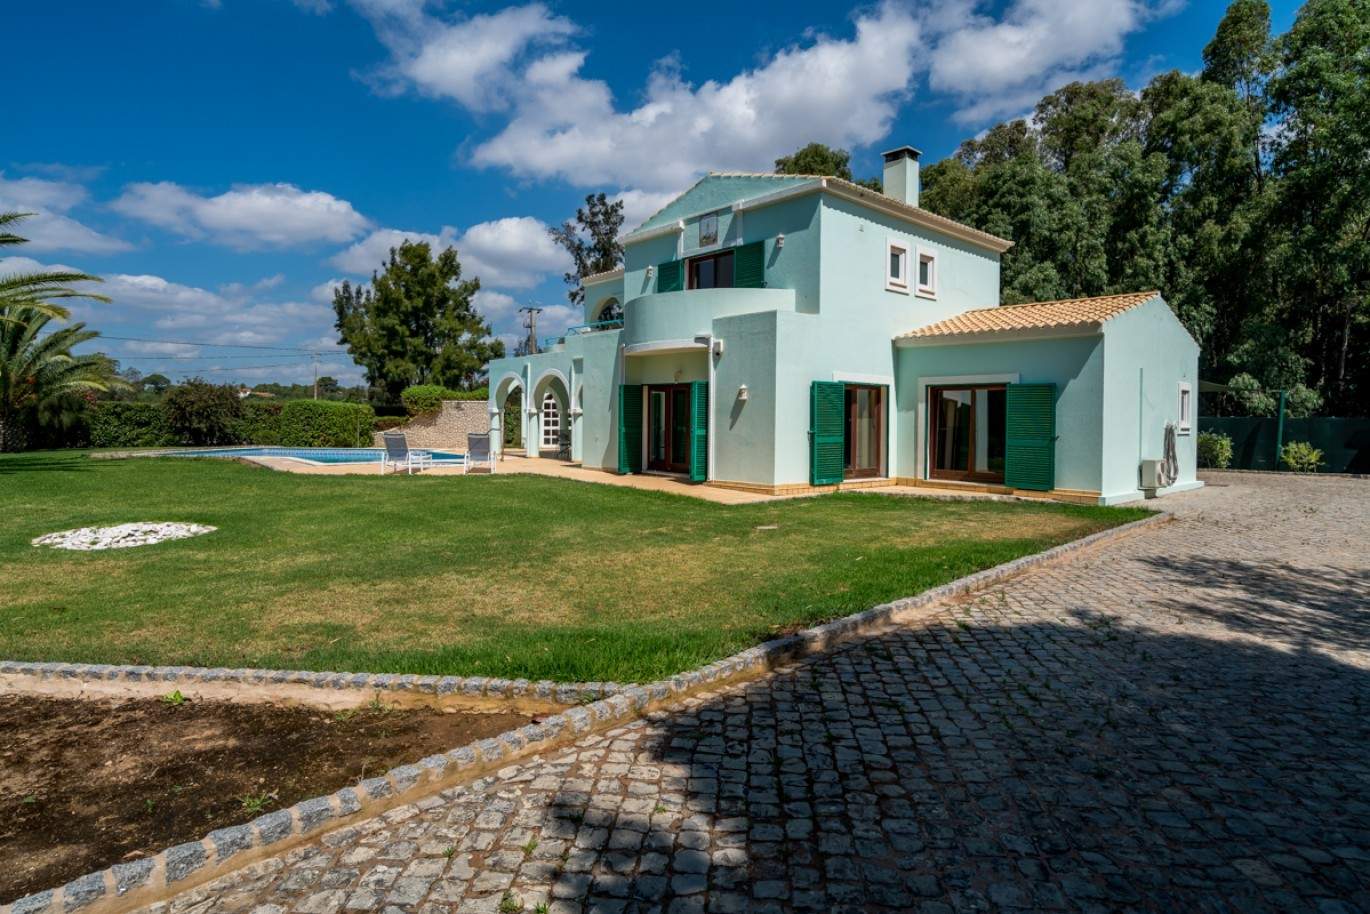 Venda de moradia com piscina na Penina, Alvor, Algarve, Portugal_83419